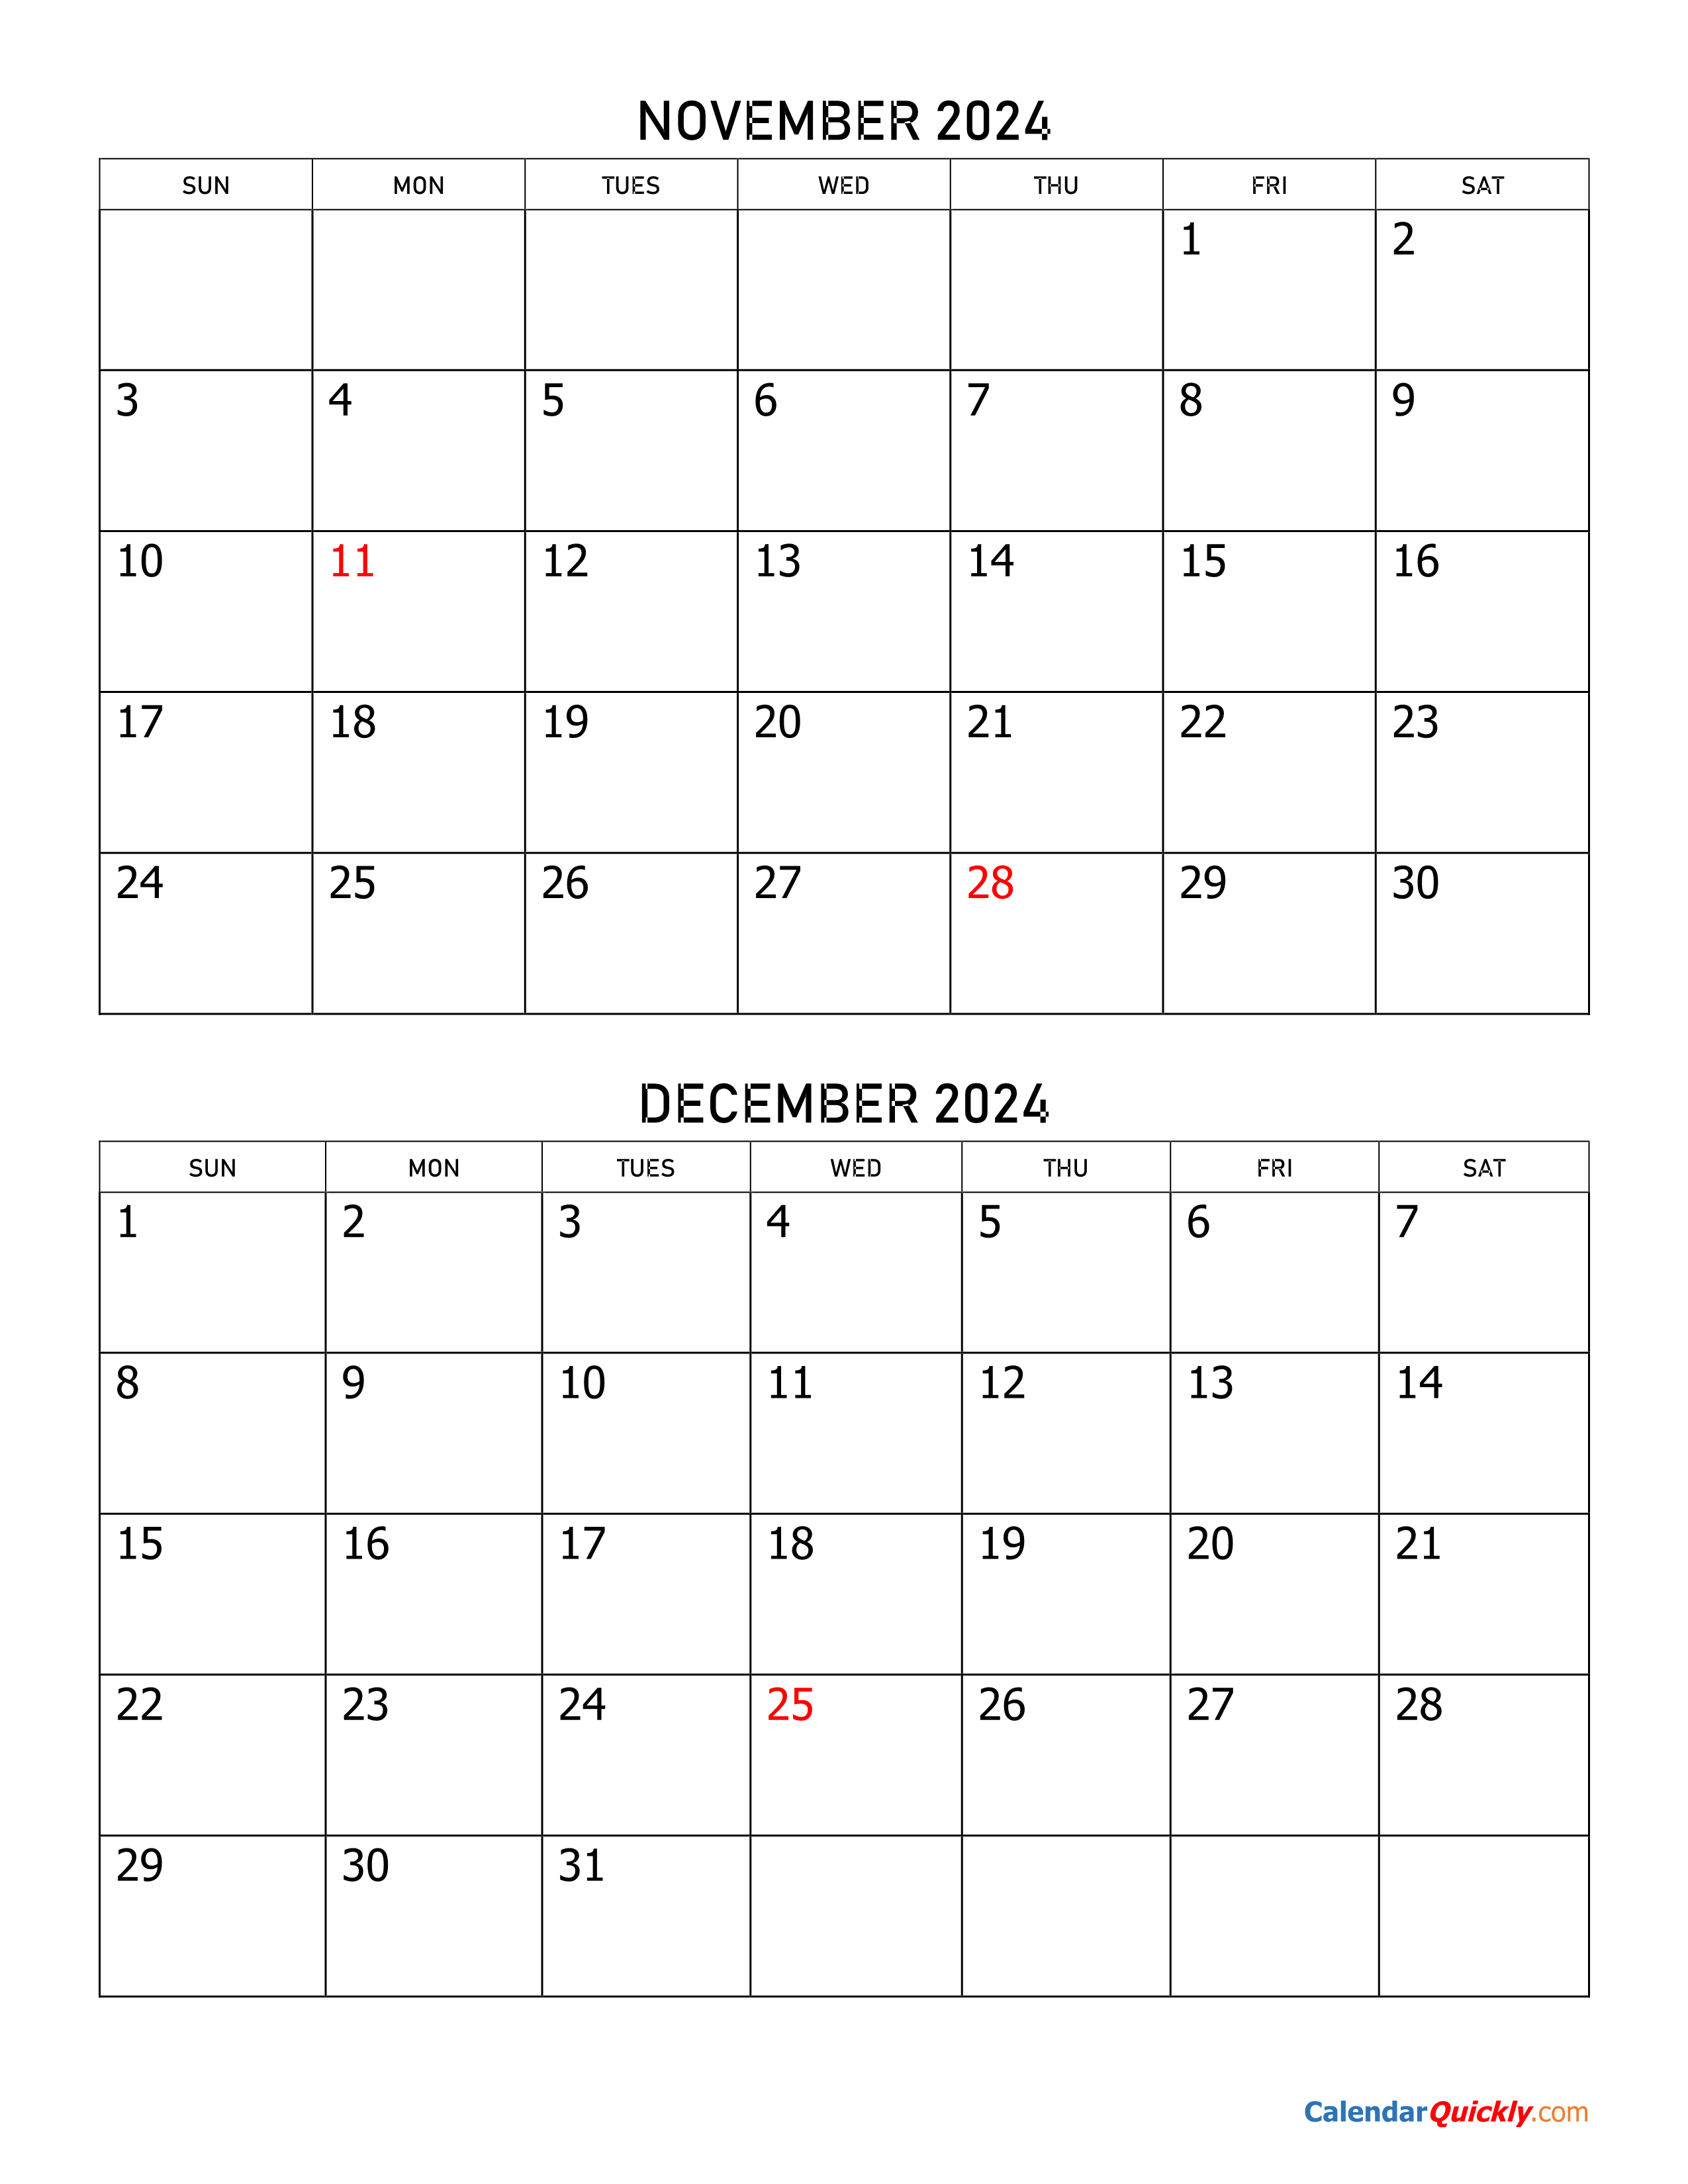 Calendar For November And December prntbl concejomunicipaldechinu gov co